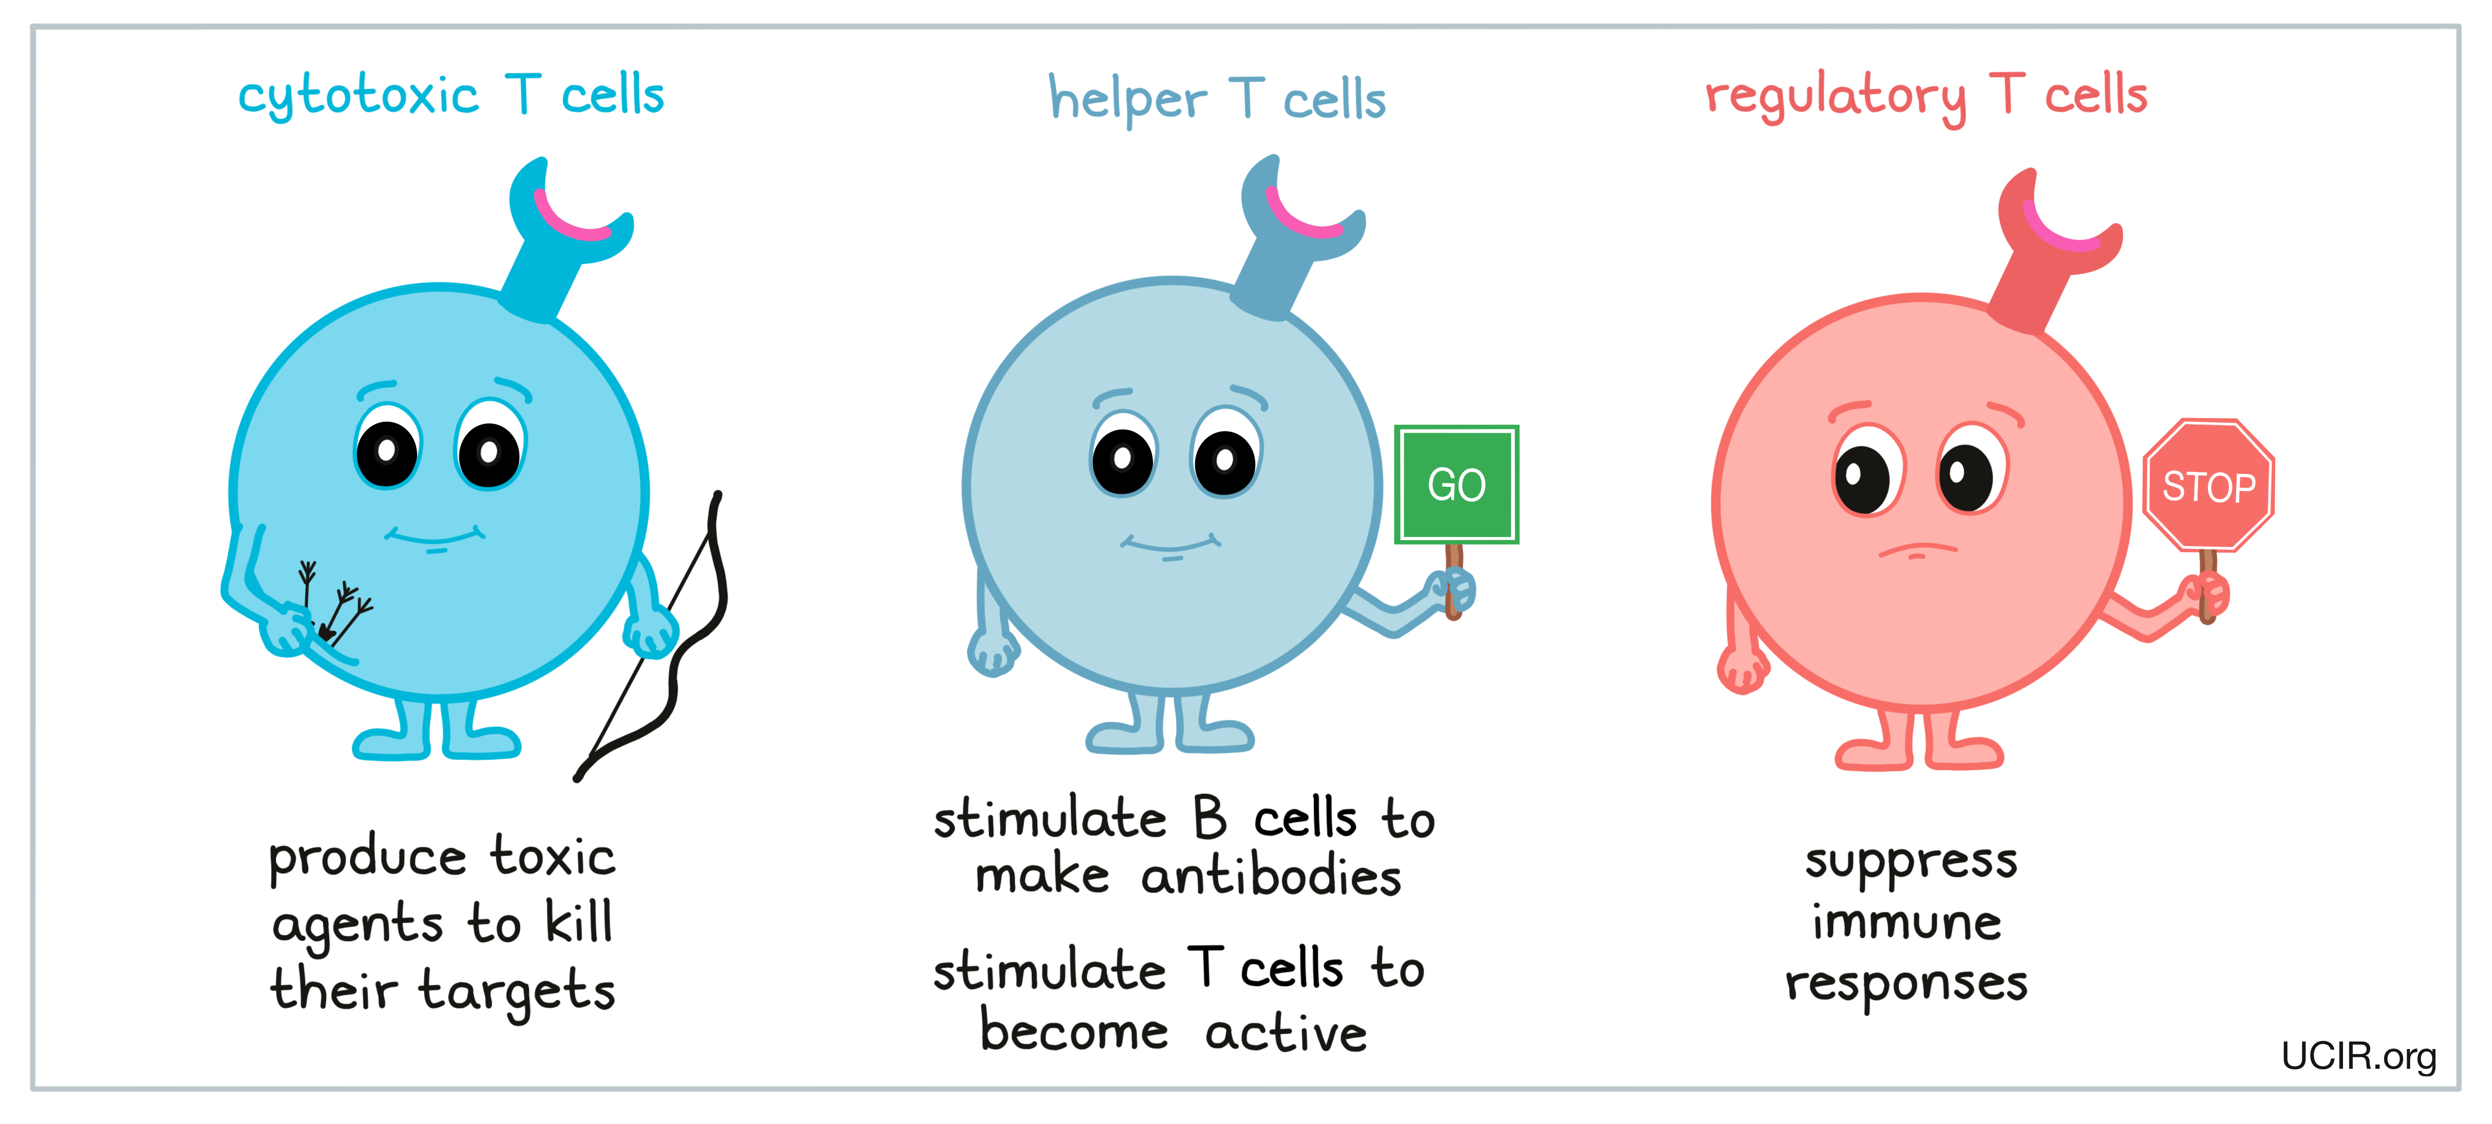 Types of T cells: cytotoxic T cells + helper T cells + regulatory T cells